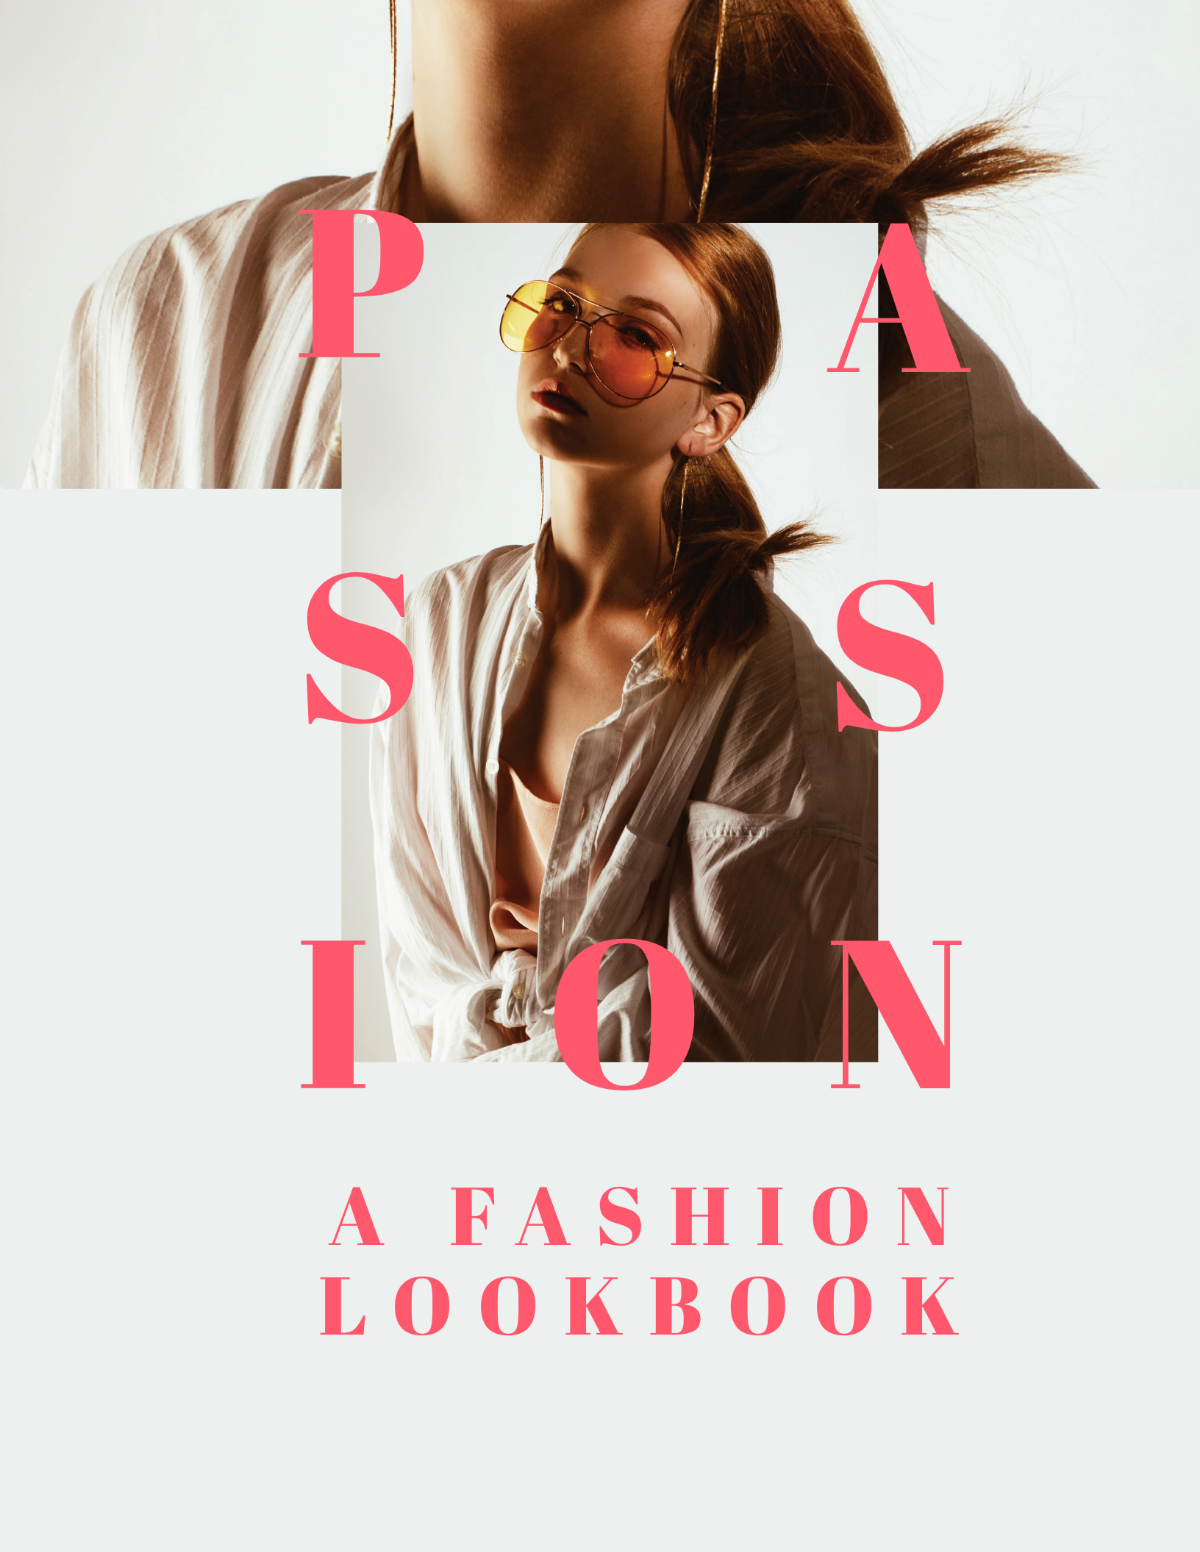 Fashion Company Profile Lookbook Template